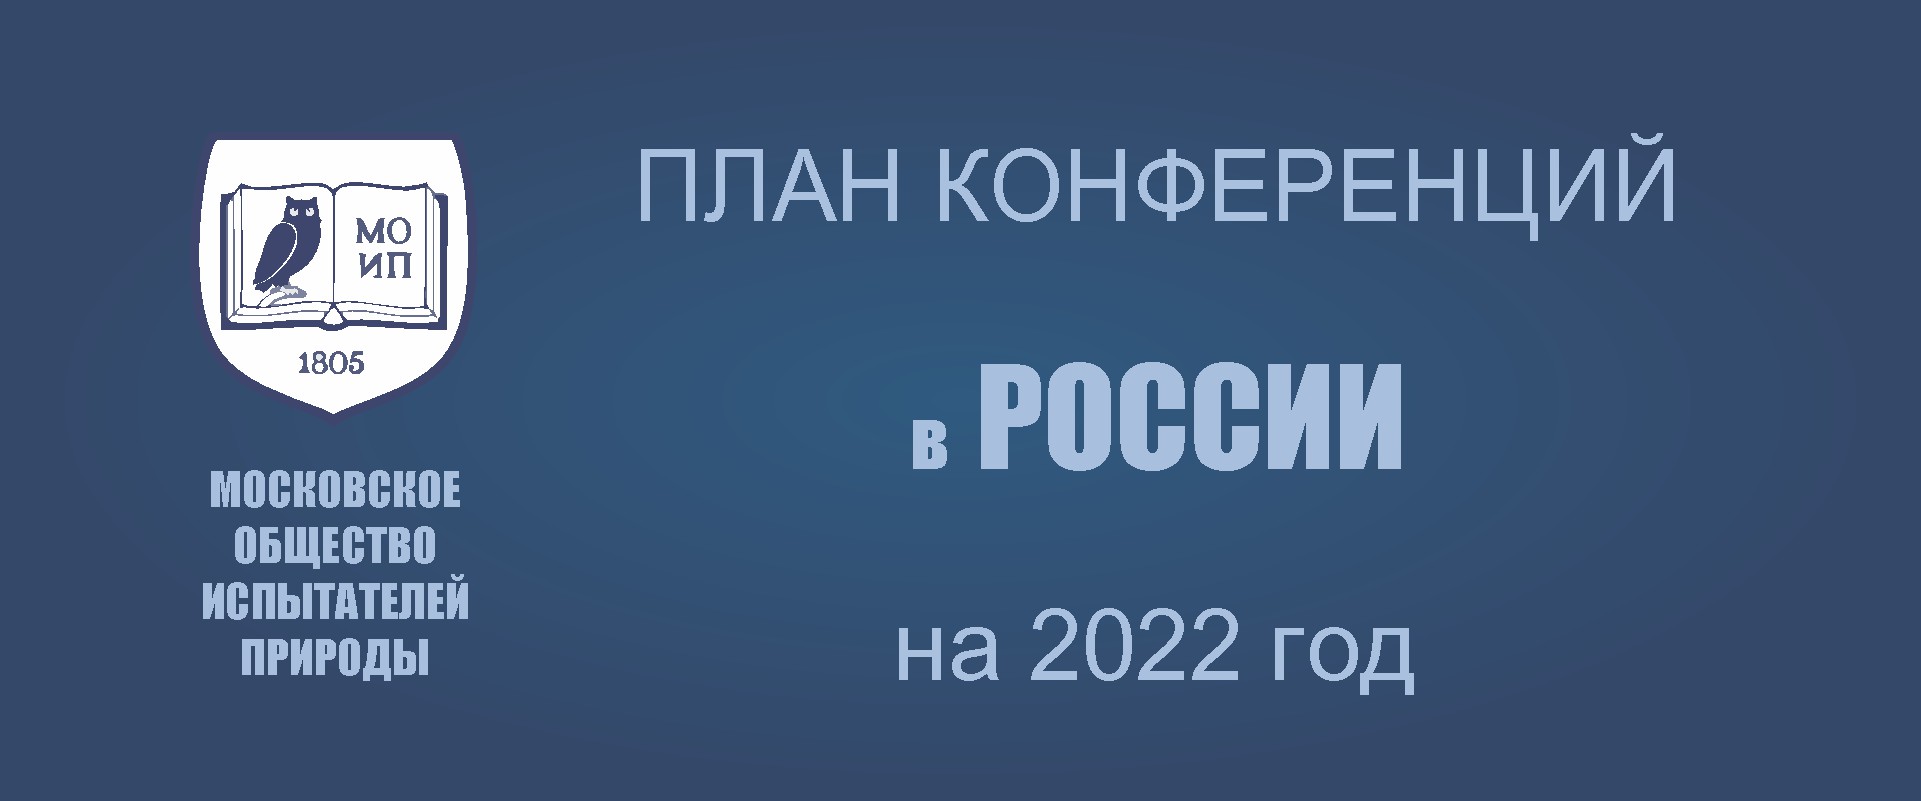 ПРЕДСТОЯЩИЕ КОНФЕРЕНЦИИ В РОССИИ (КРОМЕ МОСКВЫ) в 2022 году 